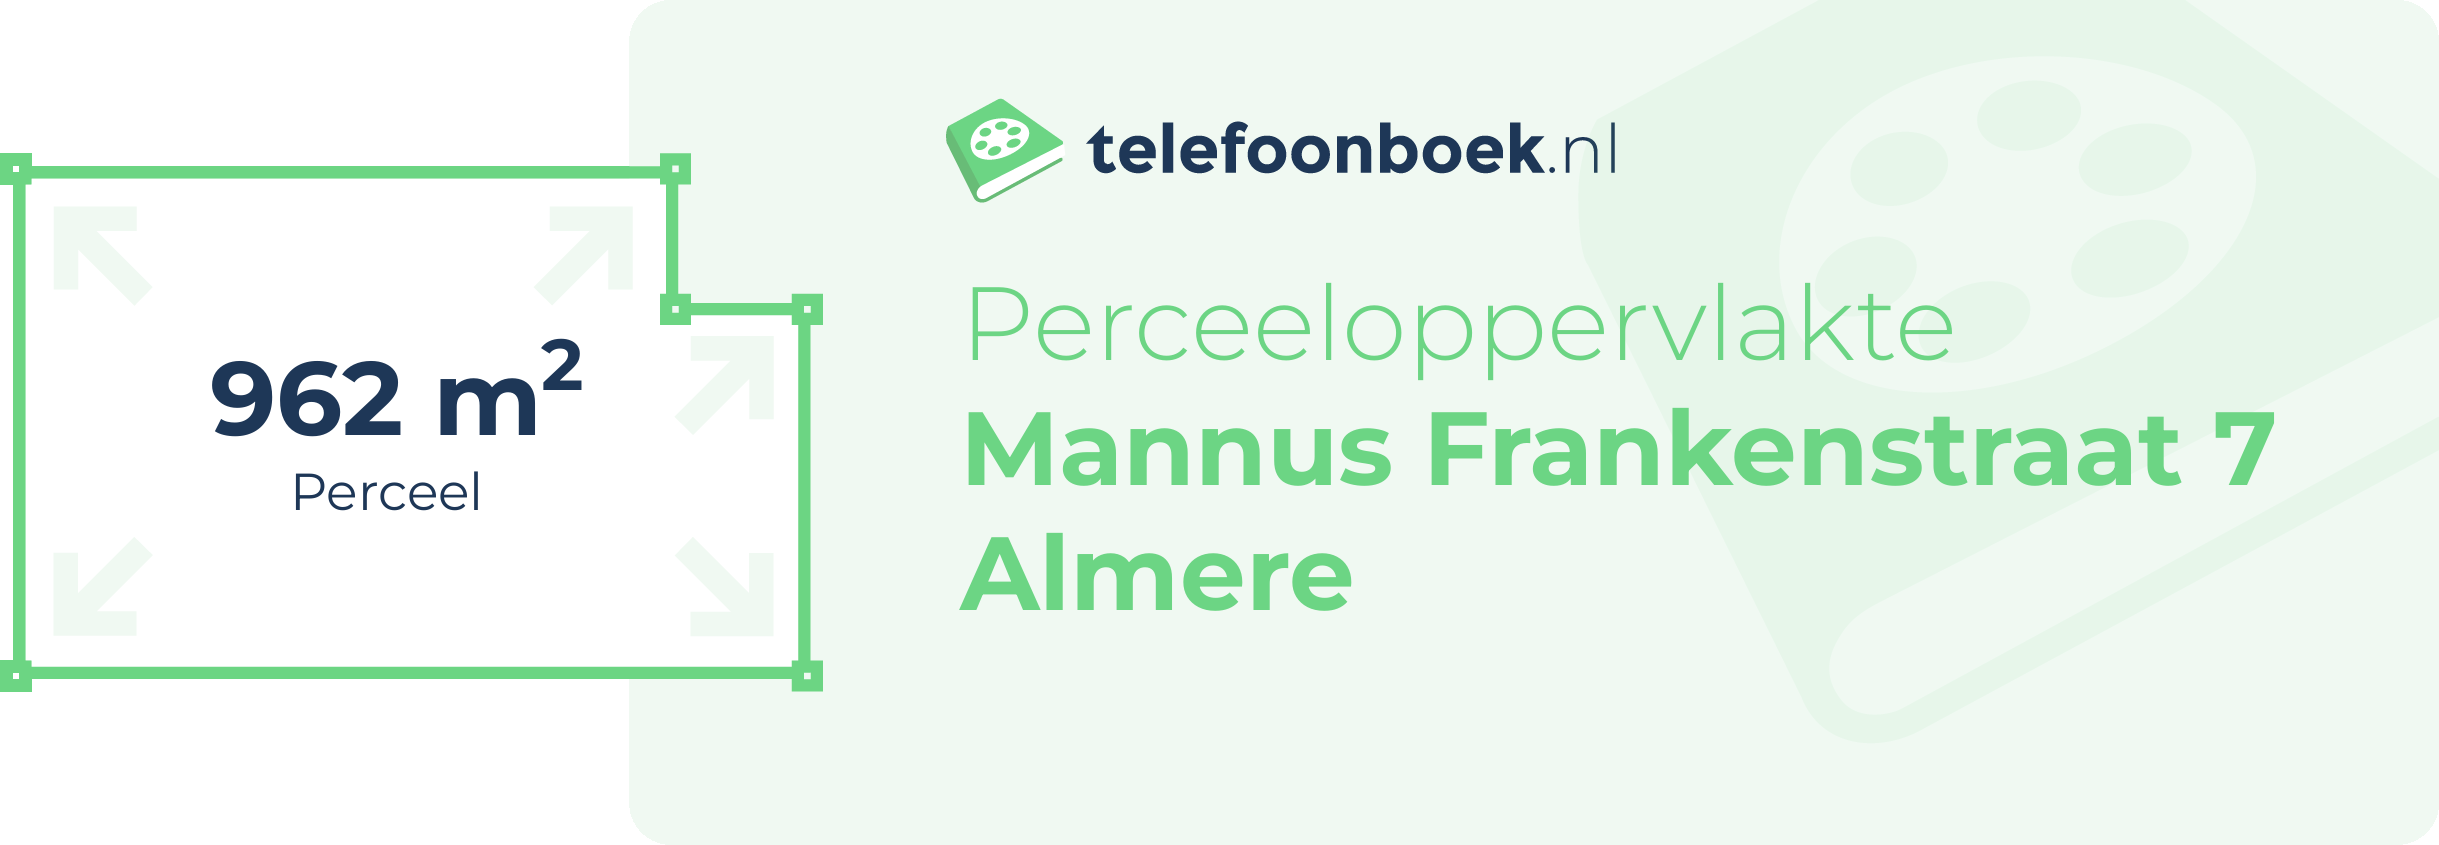 Perceeloppervlakte Mannus Frankenstraat 7 Almere